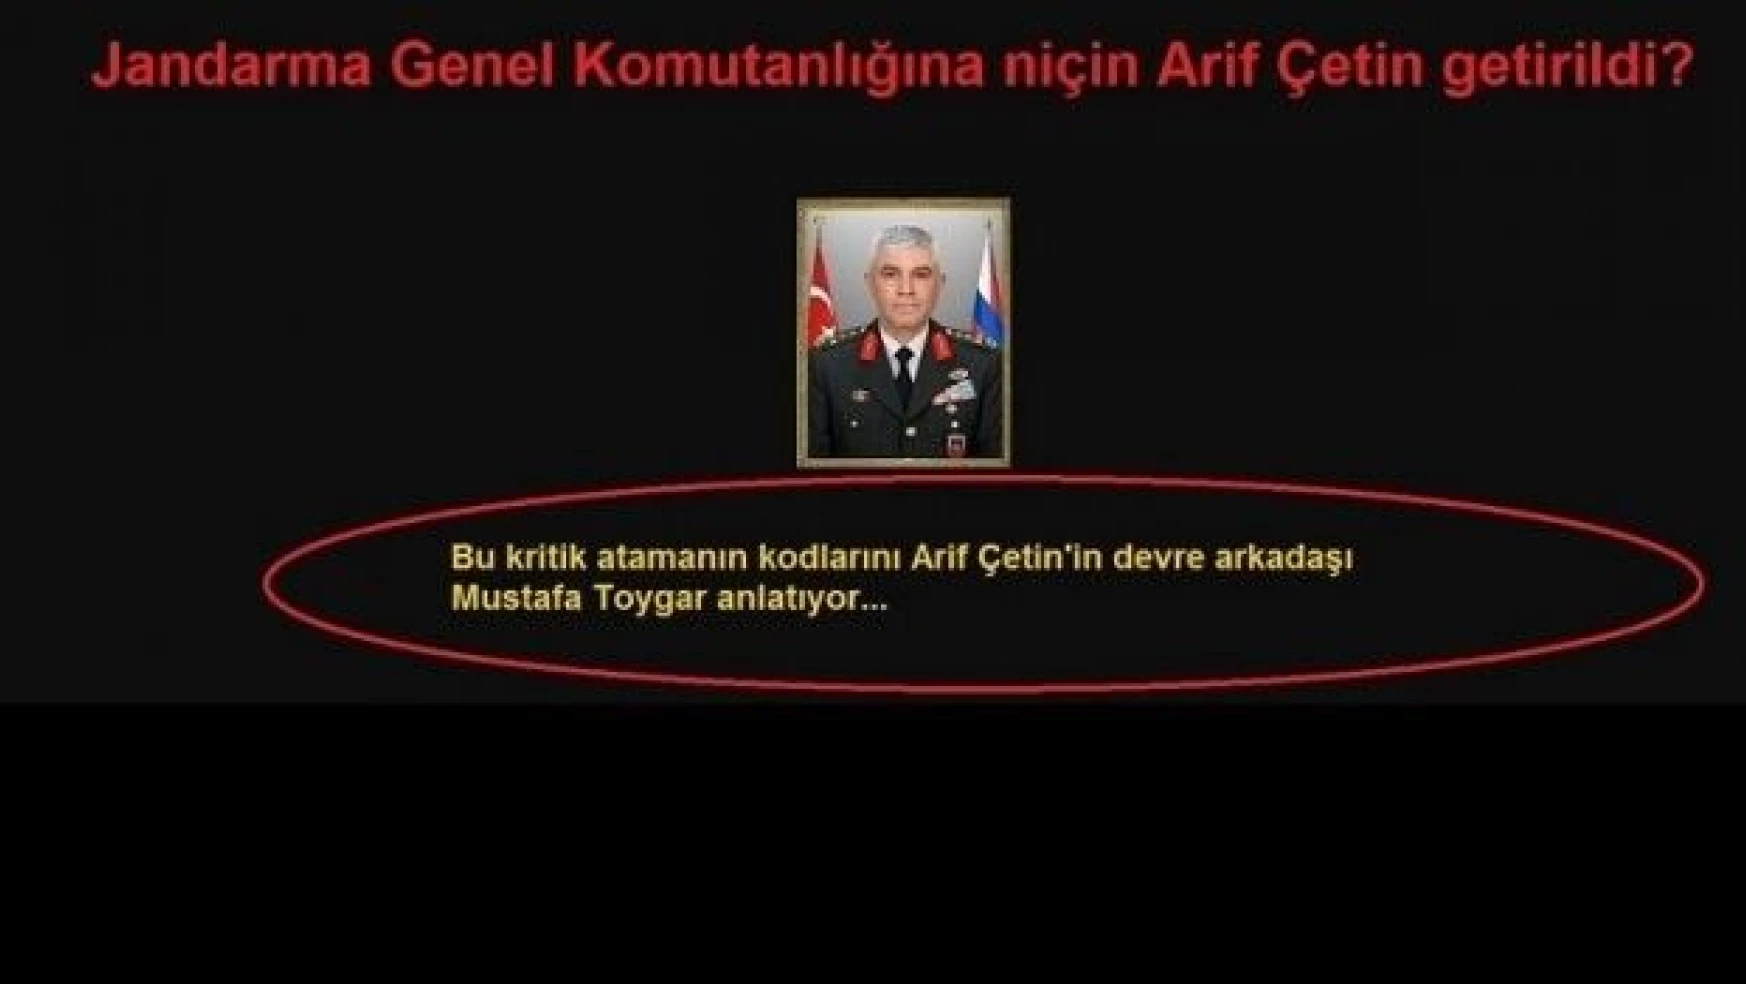 Jandarma Genel Komutanlığına niçin Arif Çetin getirildi?